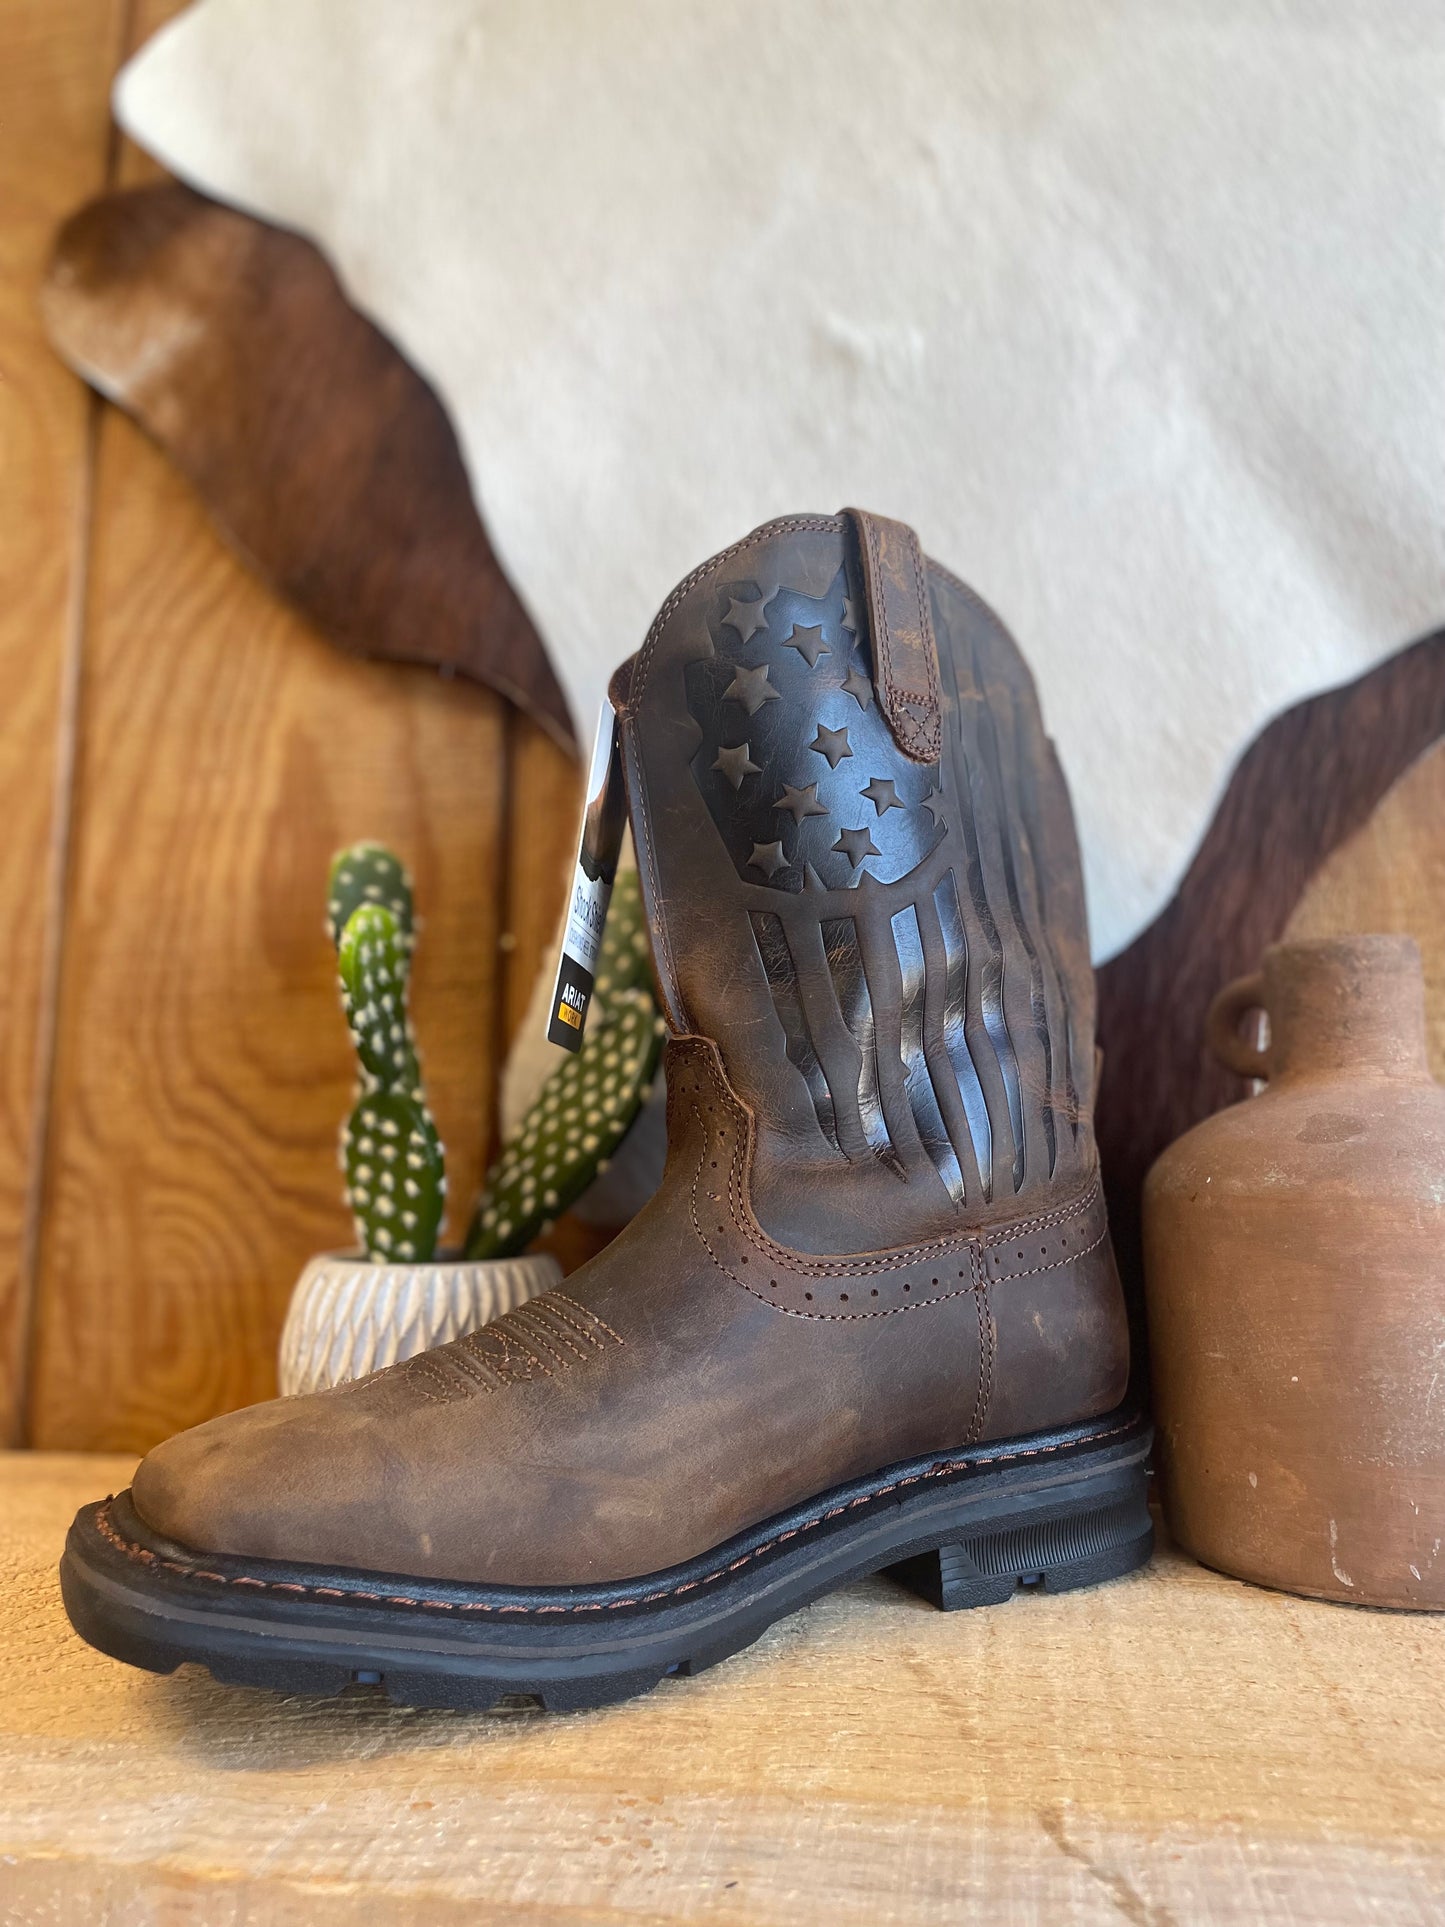 Ariat Men's Sierra Shock Shield Western Boot in Patriotic Brown